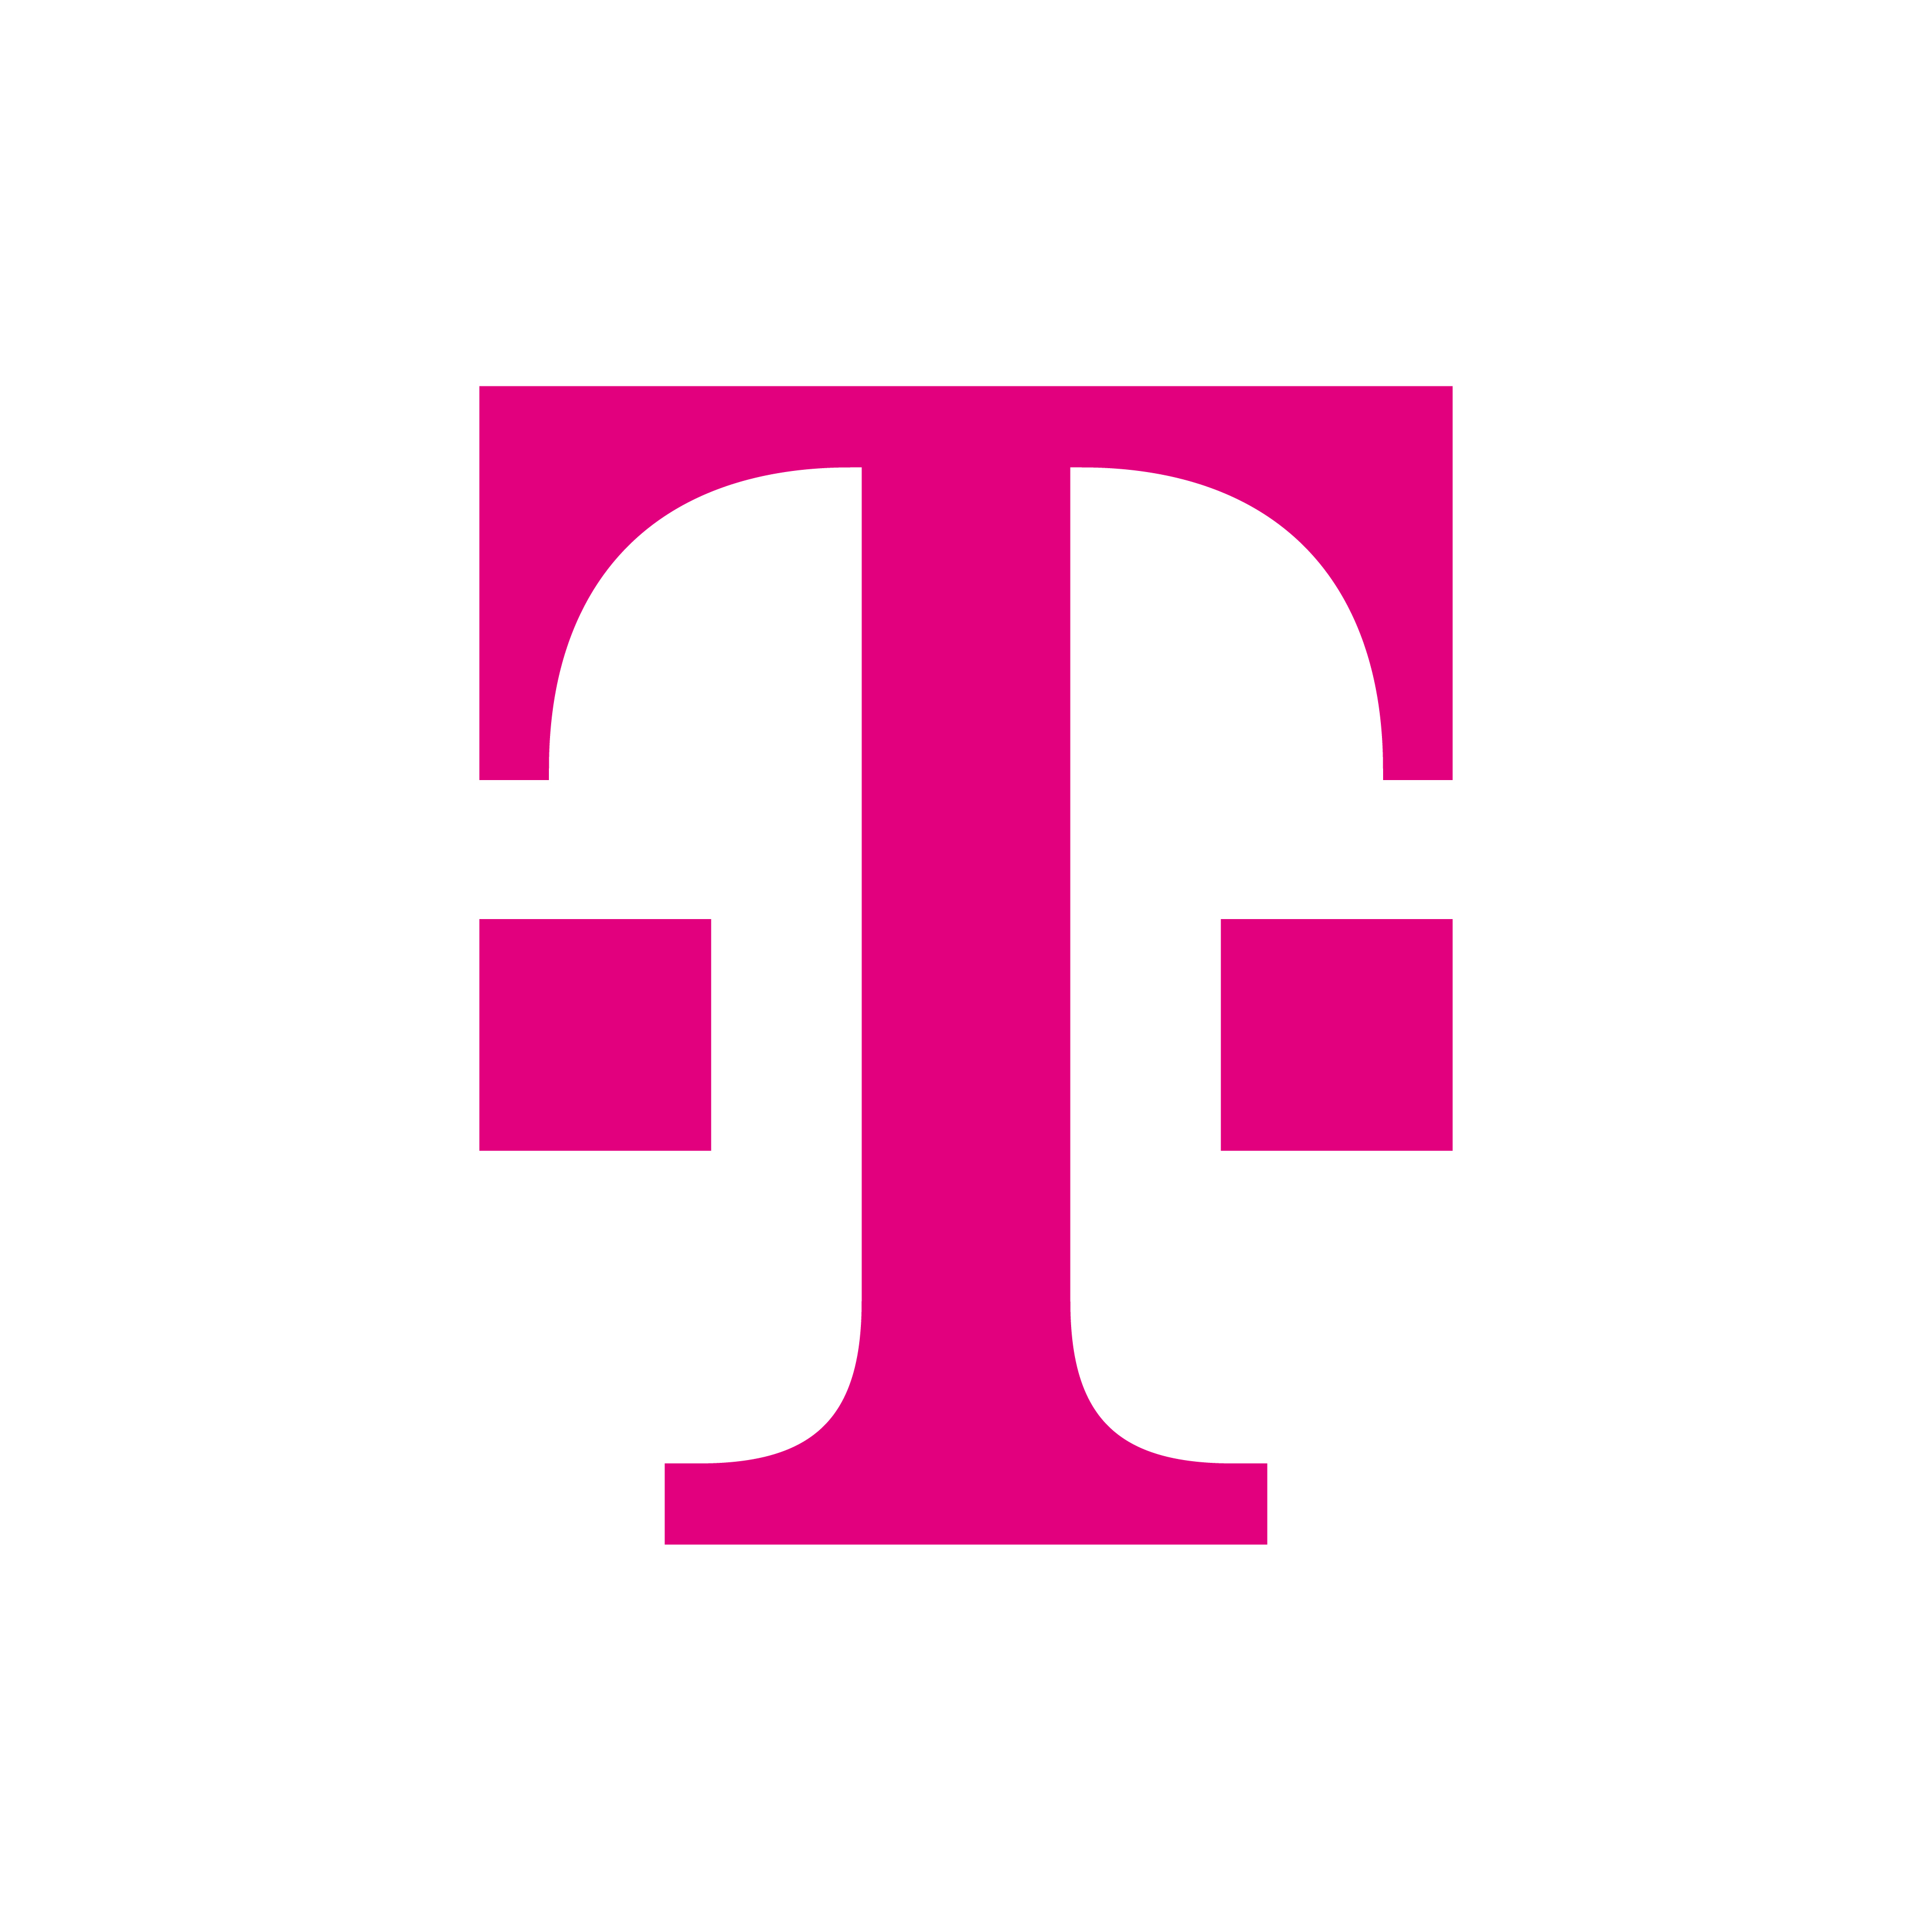 Deutsche Telekom Brand Logo